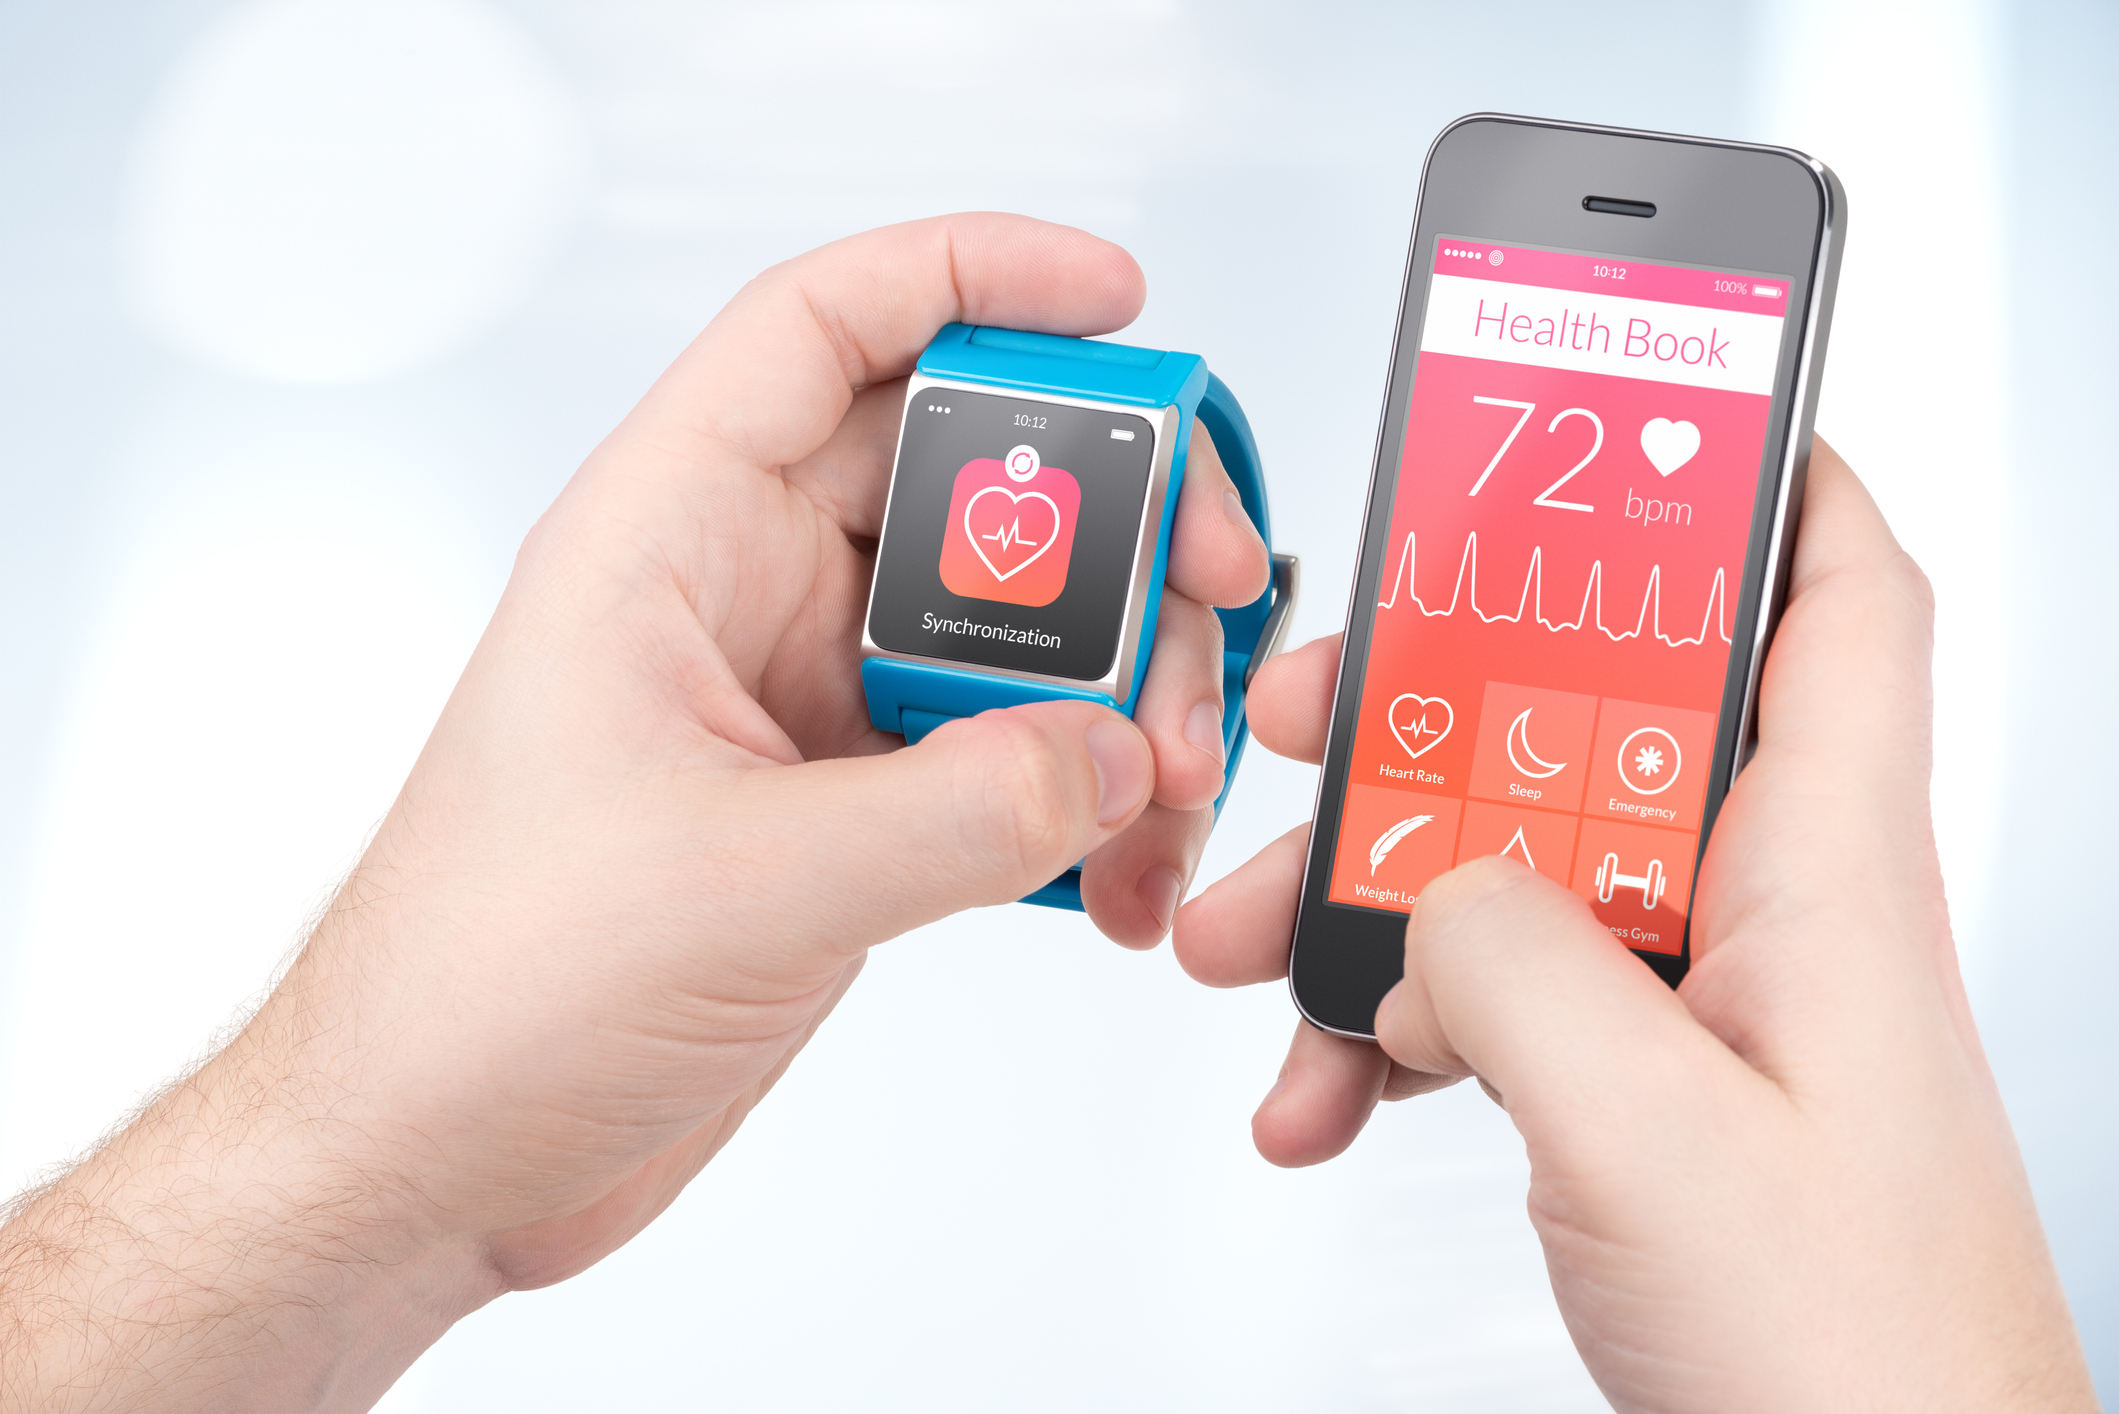 Synchronizace zdravotních dat mezi chytrým náramkem a chytrým telefonem